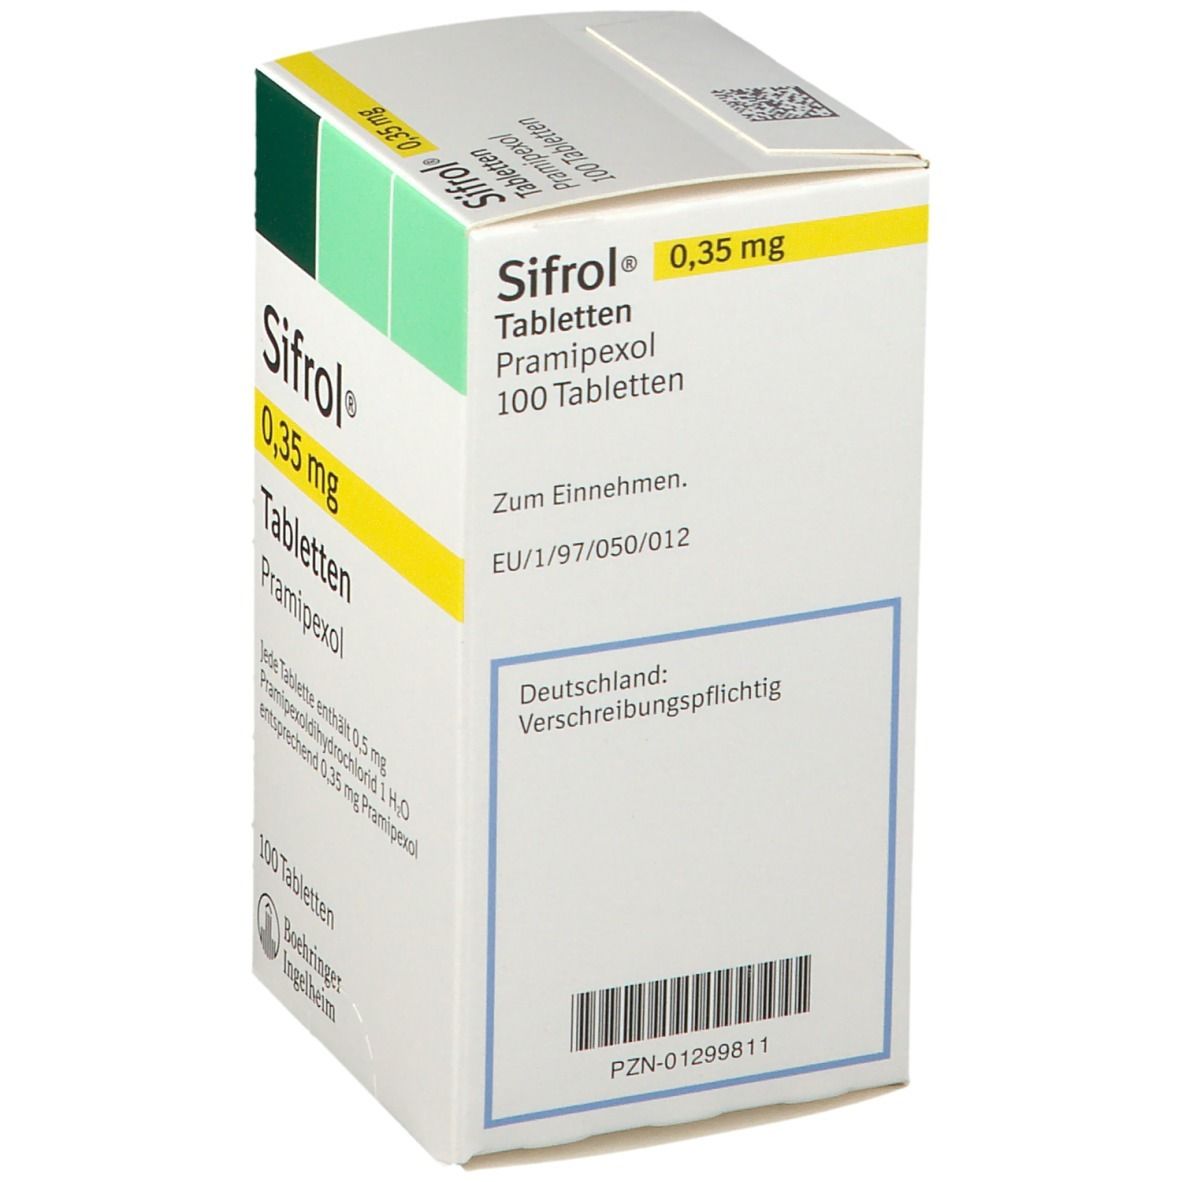 Sifrol® 0,35 mg